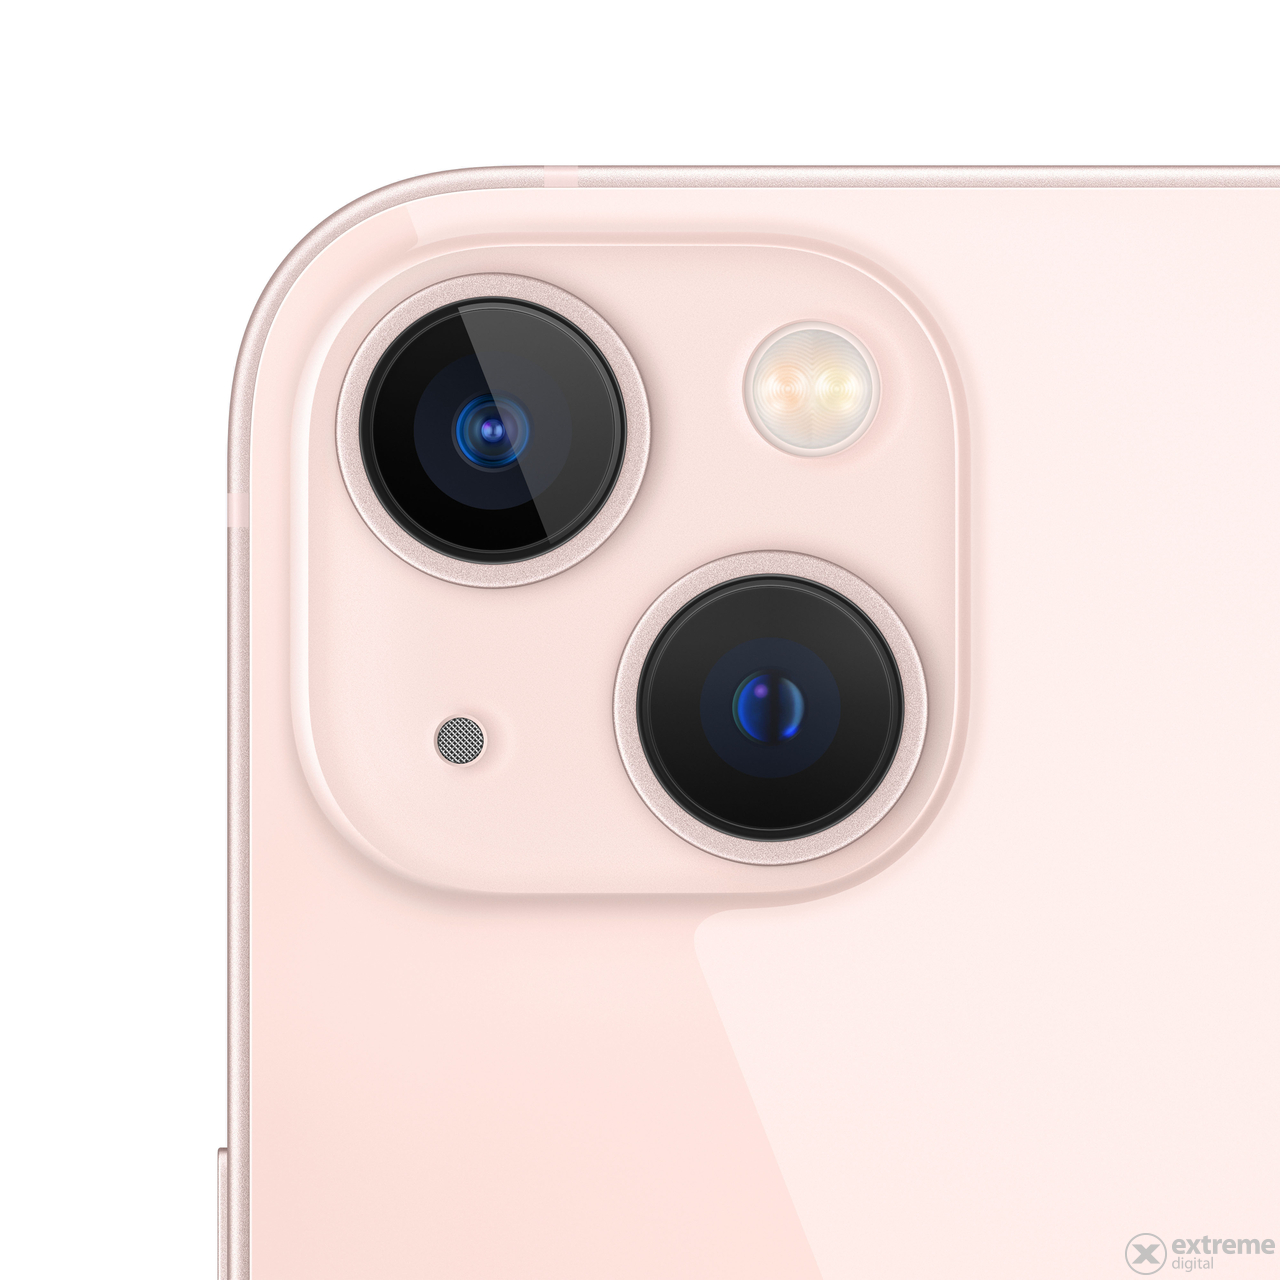 Apple iPhone 13 mini 256GB (mlk73hu/a), Pink